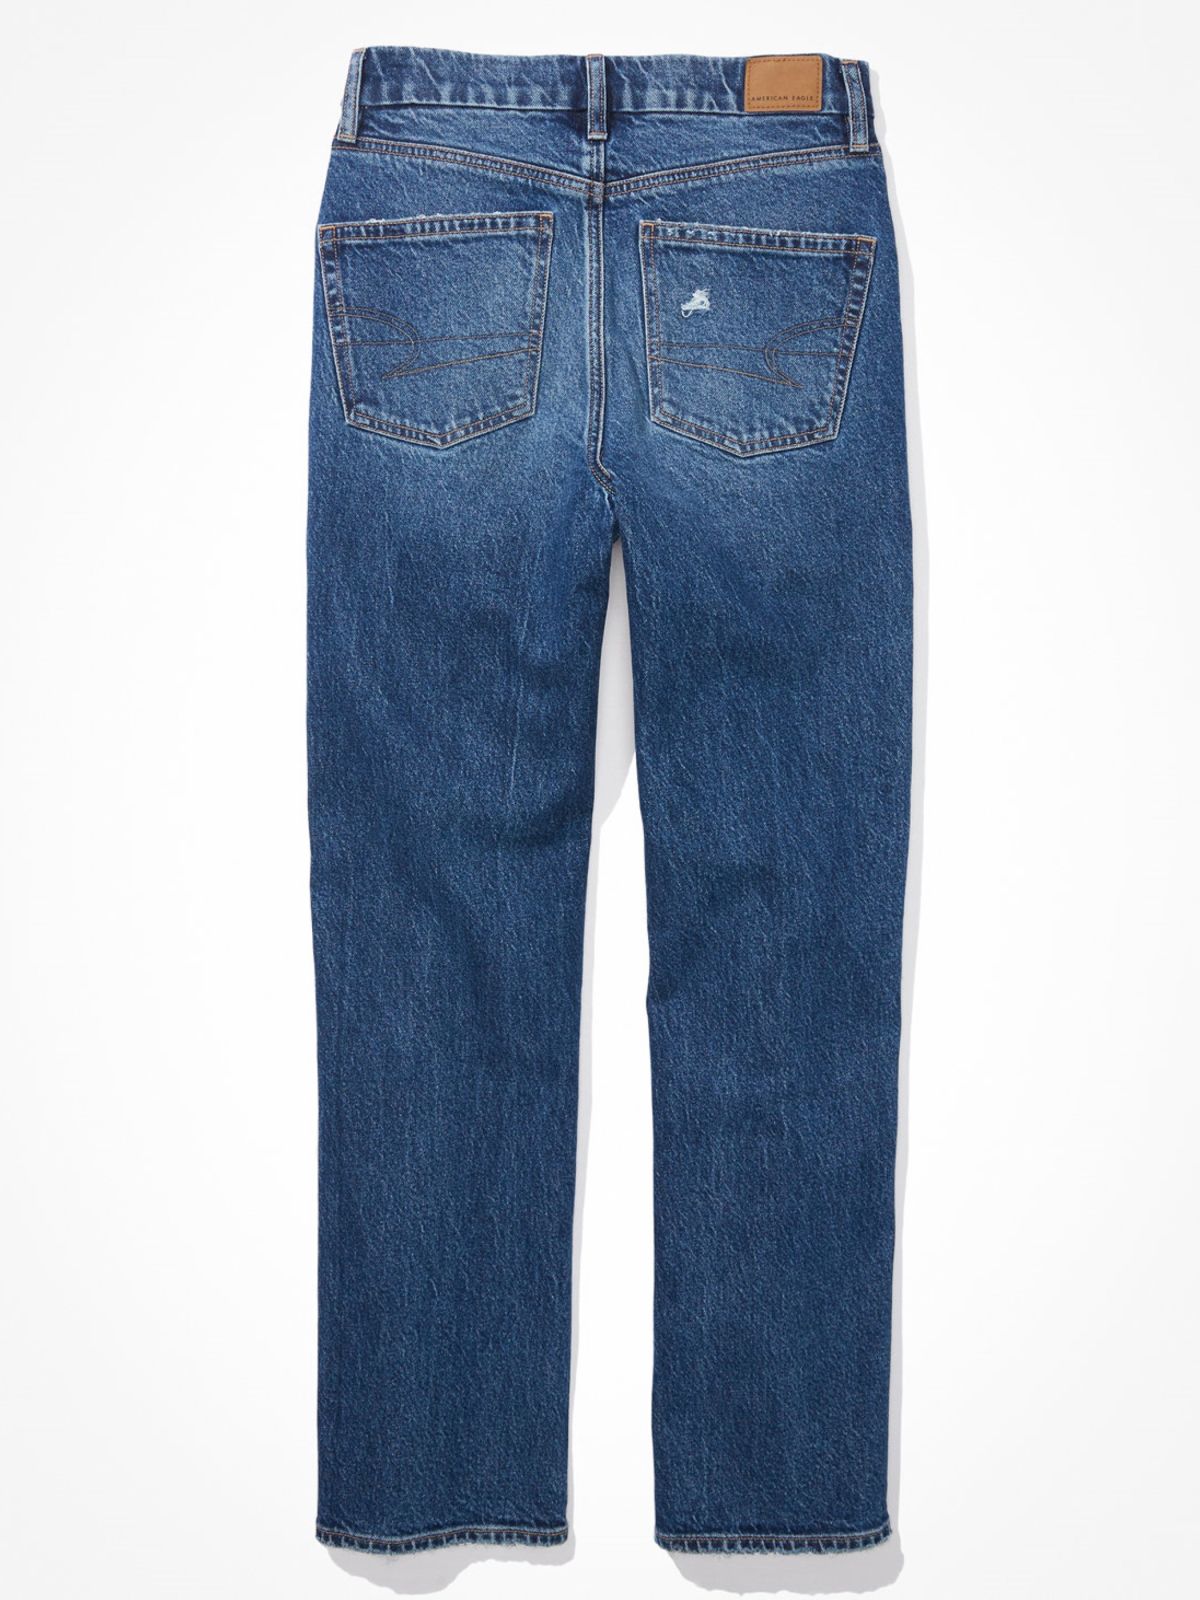  ג'ינס בגזרה מתרחבת Curvy 90S של AMERICAN EAGLE